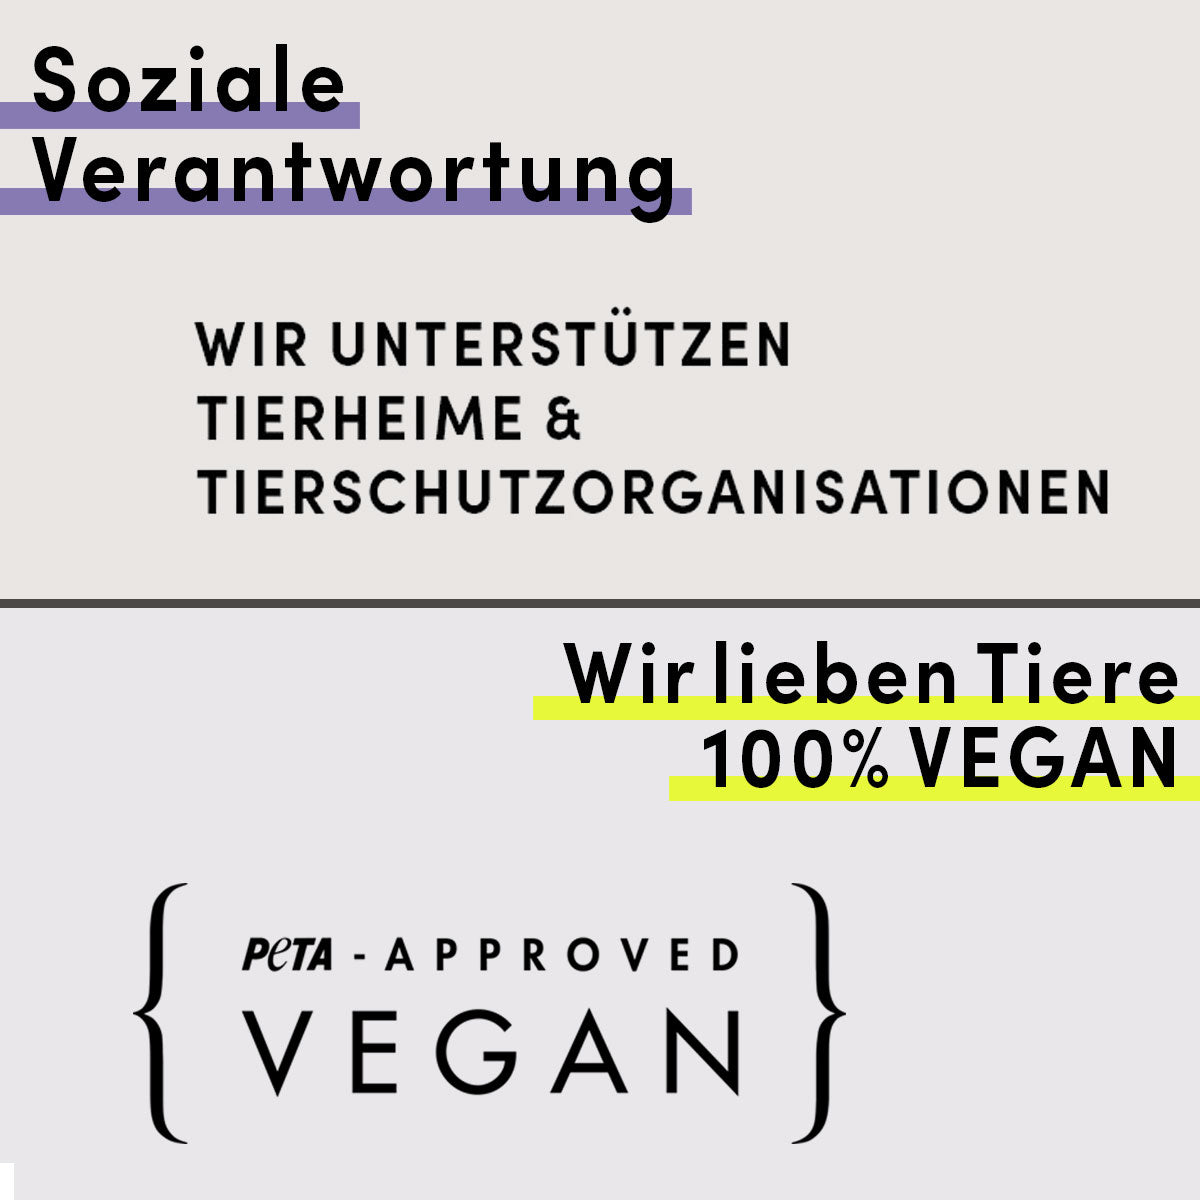 Wir unterstützen Tierheime und Tierschutzorganisationen. Zusätzlich sind alle Produkte 100% Vegan.